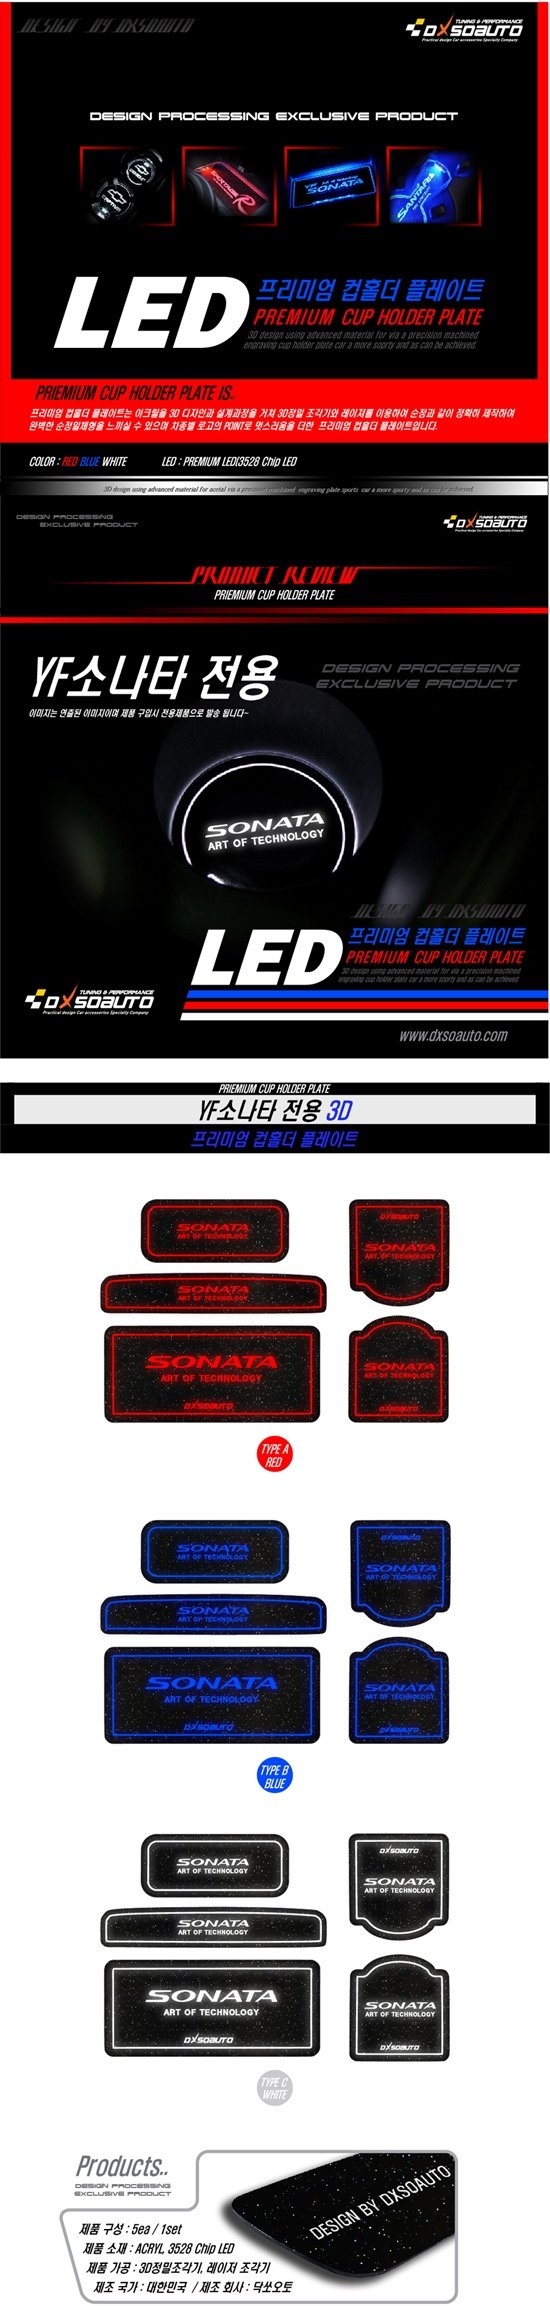 Светодиодная подсветка подстаканников Dxsoauto Hyundai Sonata 2009-2014 0147